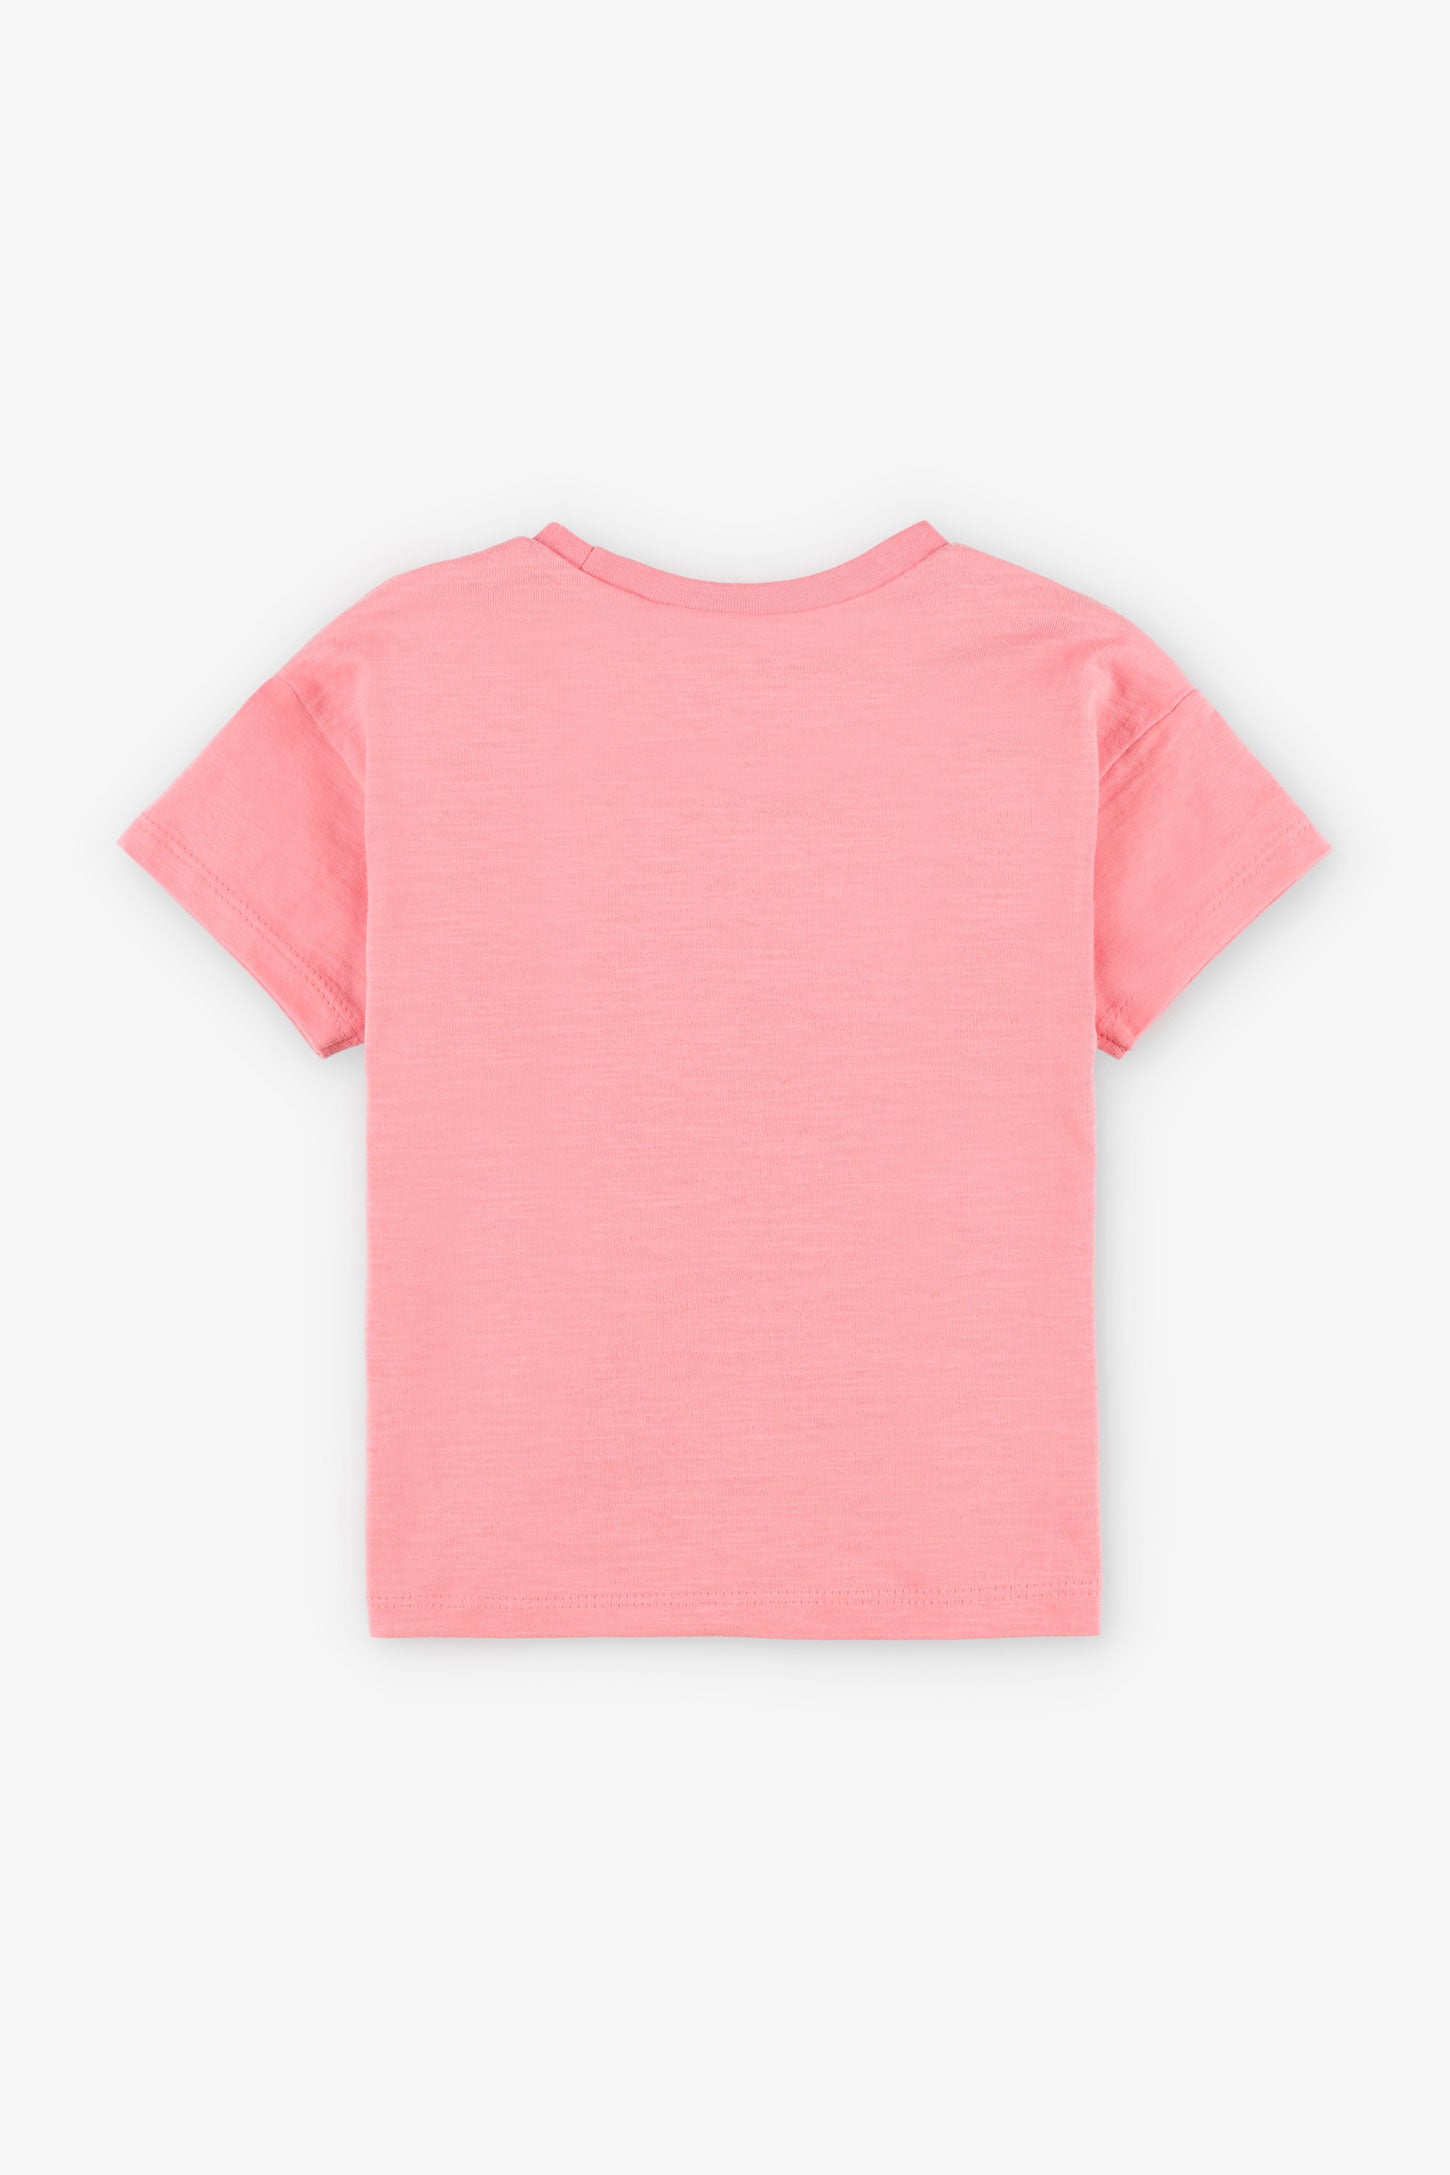 T-shirt coupe ample en coton, 2/15$ - Bébé fille && ROSE